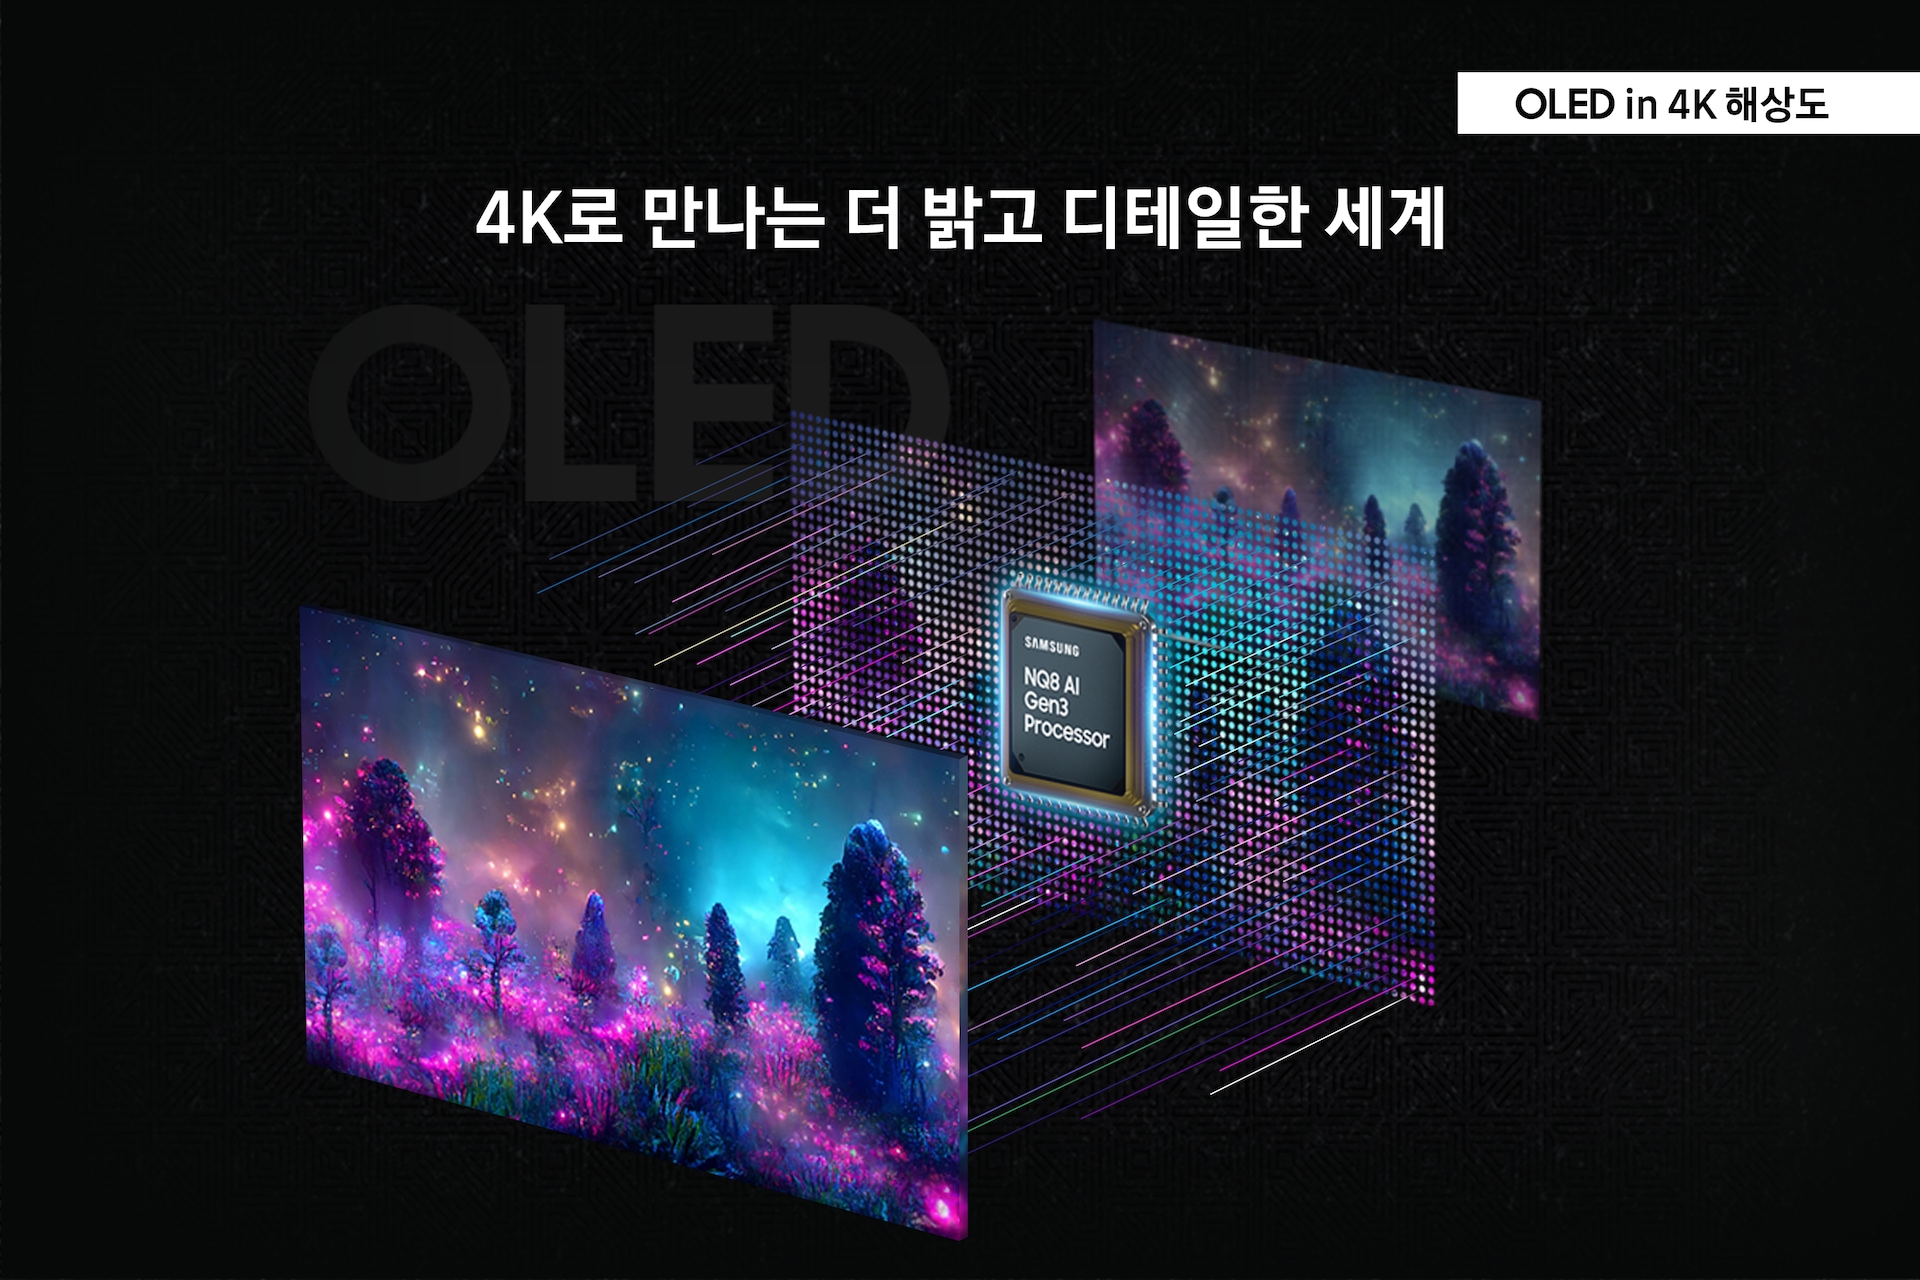 오디세이 OLED G8(G80SD) (80.3 cm) 실버 4K로 만나는 더 밝고 디테일한 세계